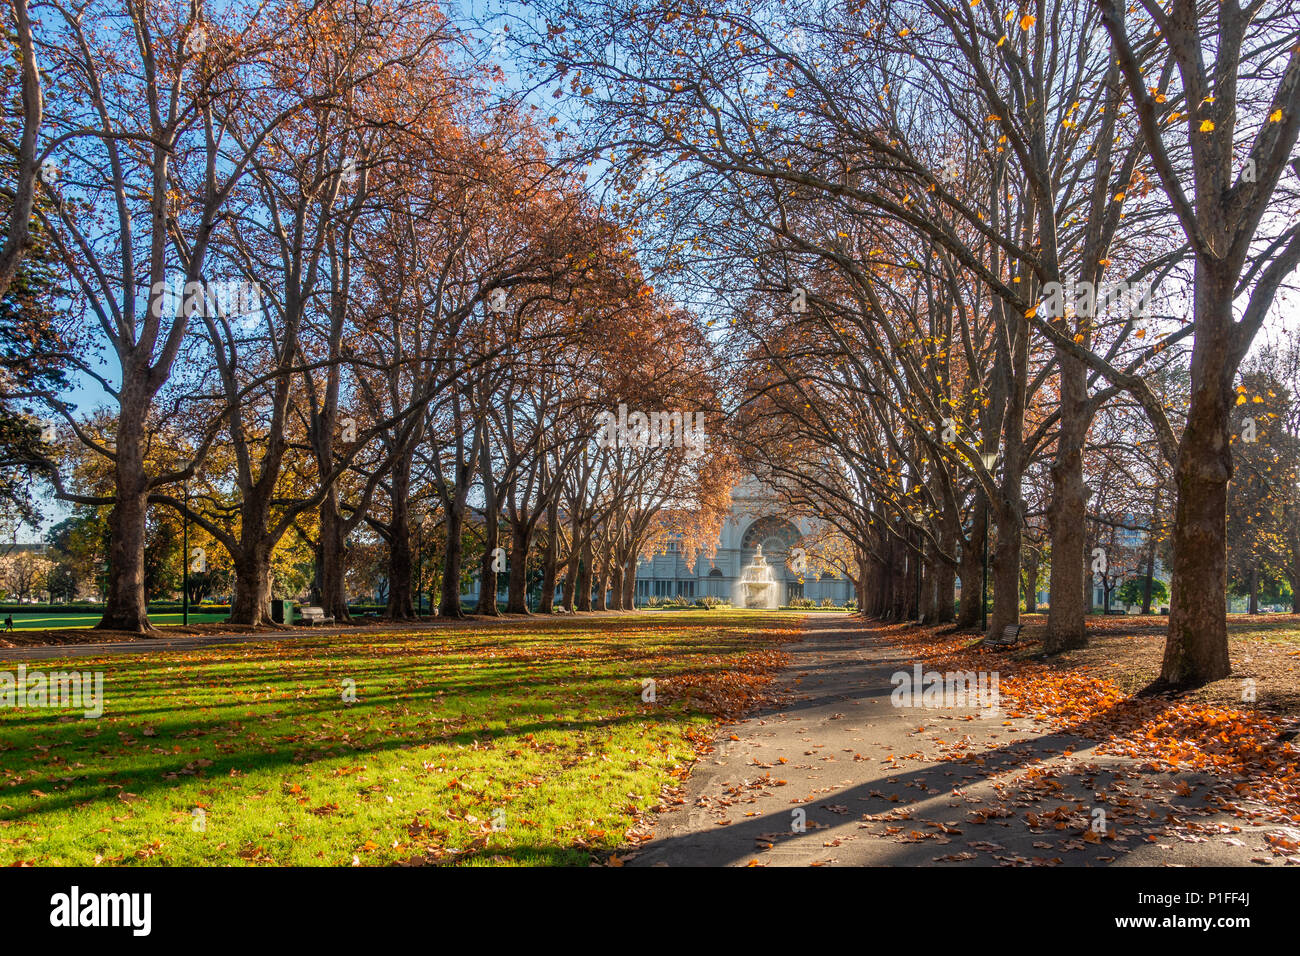 Les arbres d'automne dans le parc à l'avant l'historique Royal Exhibition Building dans la lumière du soleil du matin. Melbourne, Victoria Australie. Banque D'Images